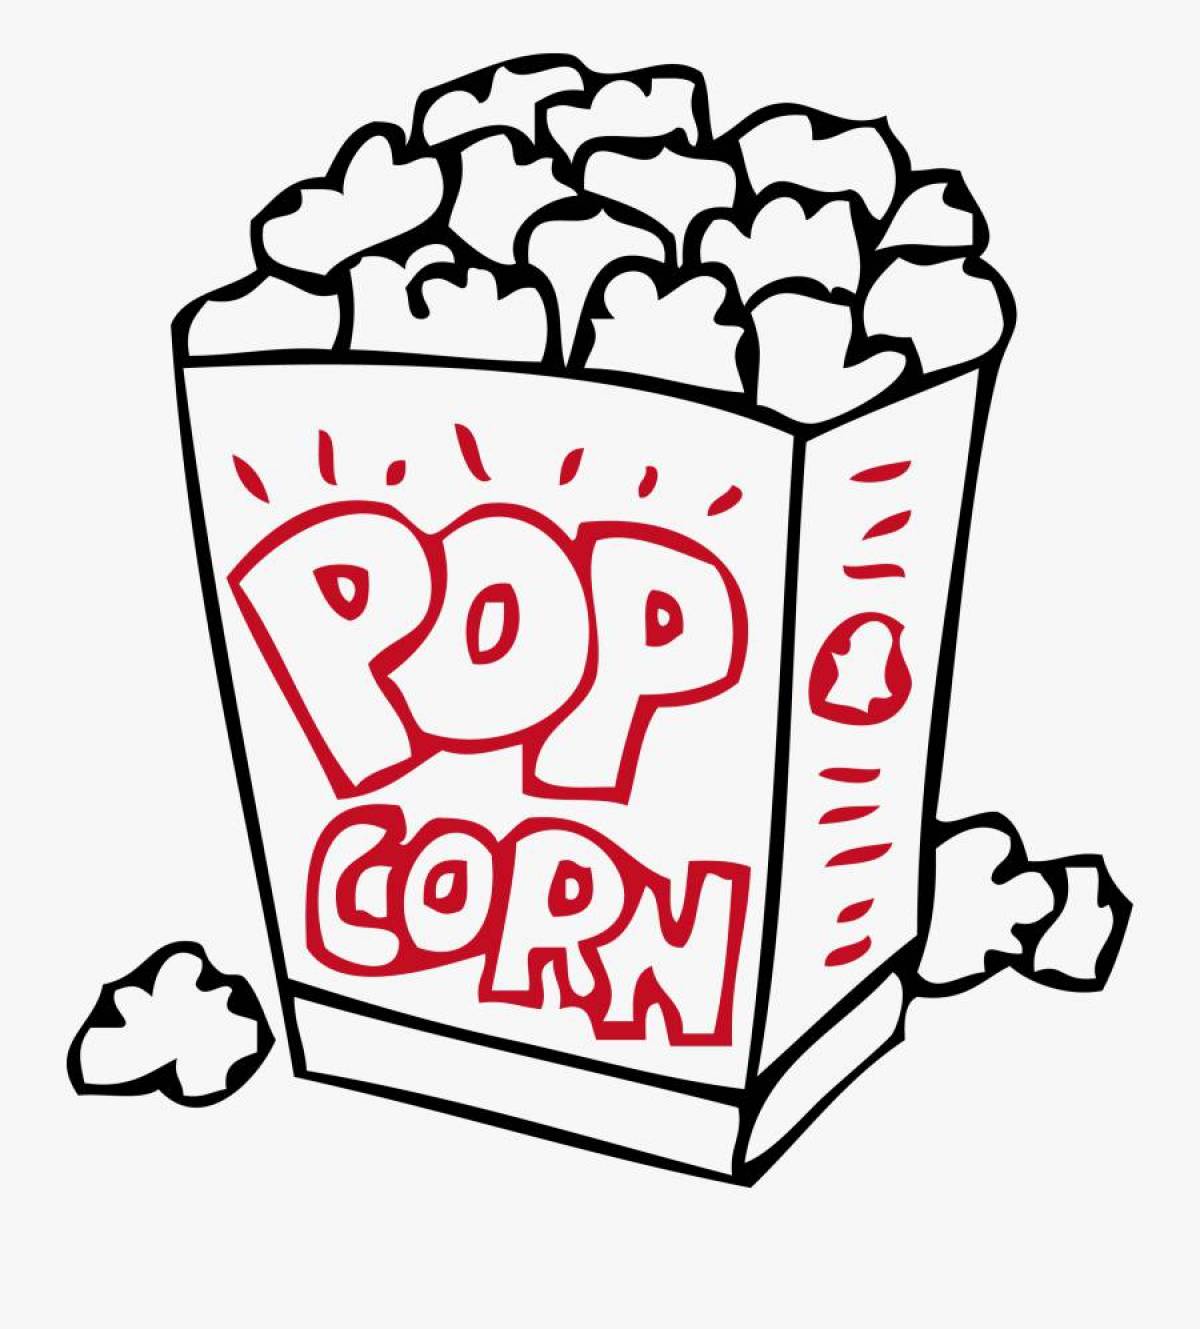 Delicious popcorn coloring page